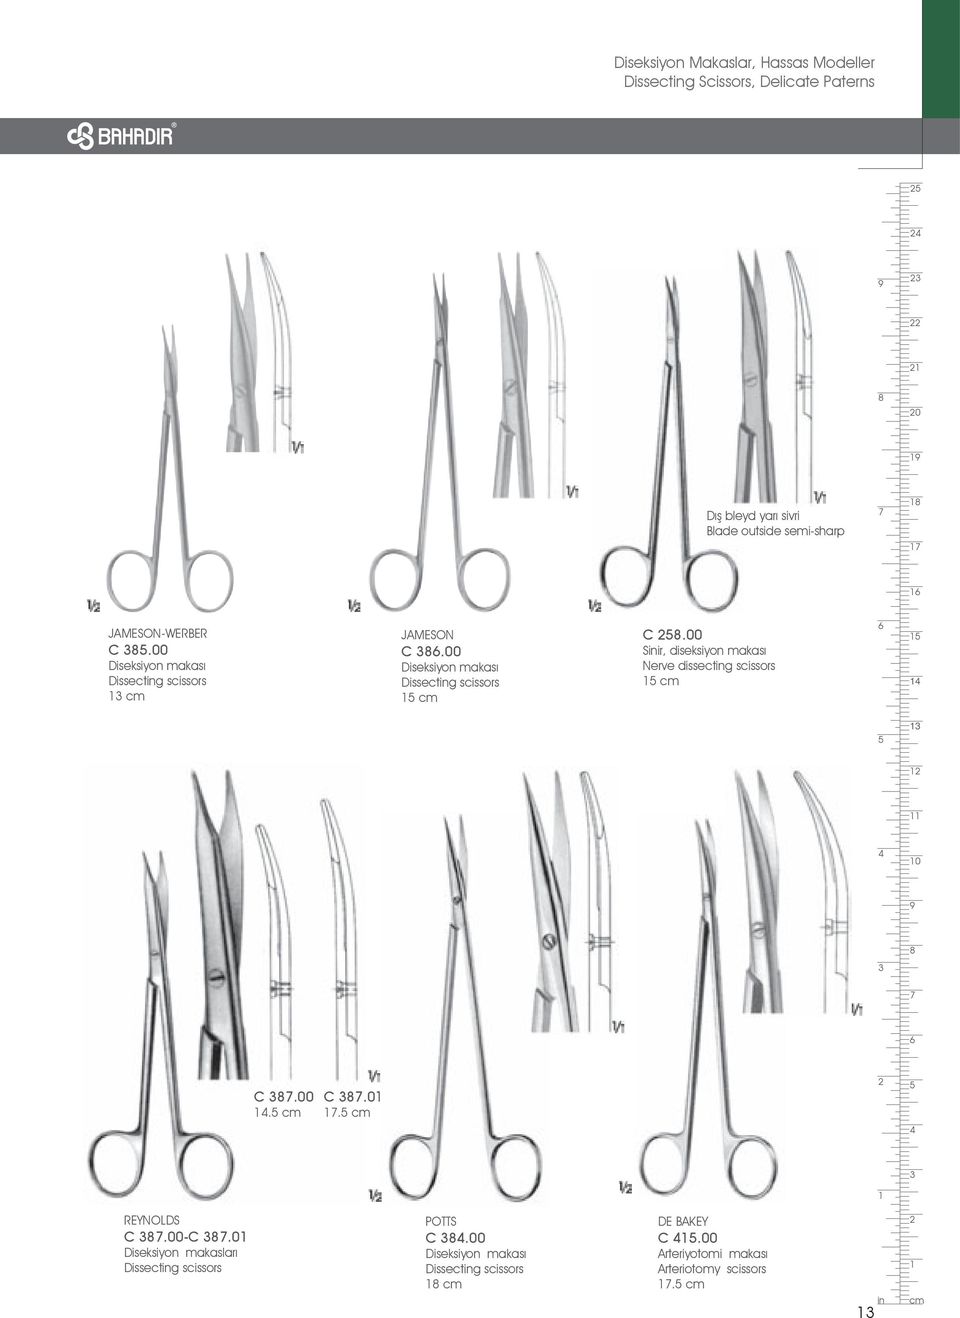 00 Sinir, diseksiyon makası Nerve dissecting scissors cm 0 C.00. cm C.0. cm REYNOLDS C.00-C.